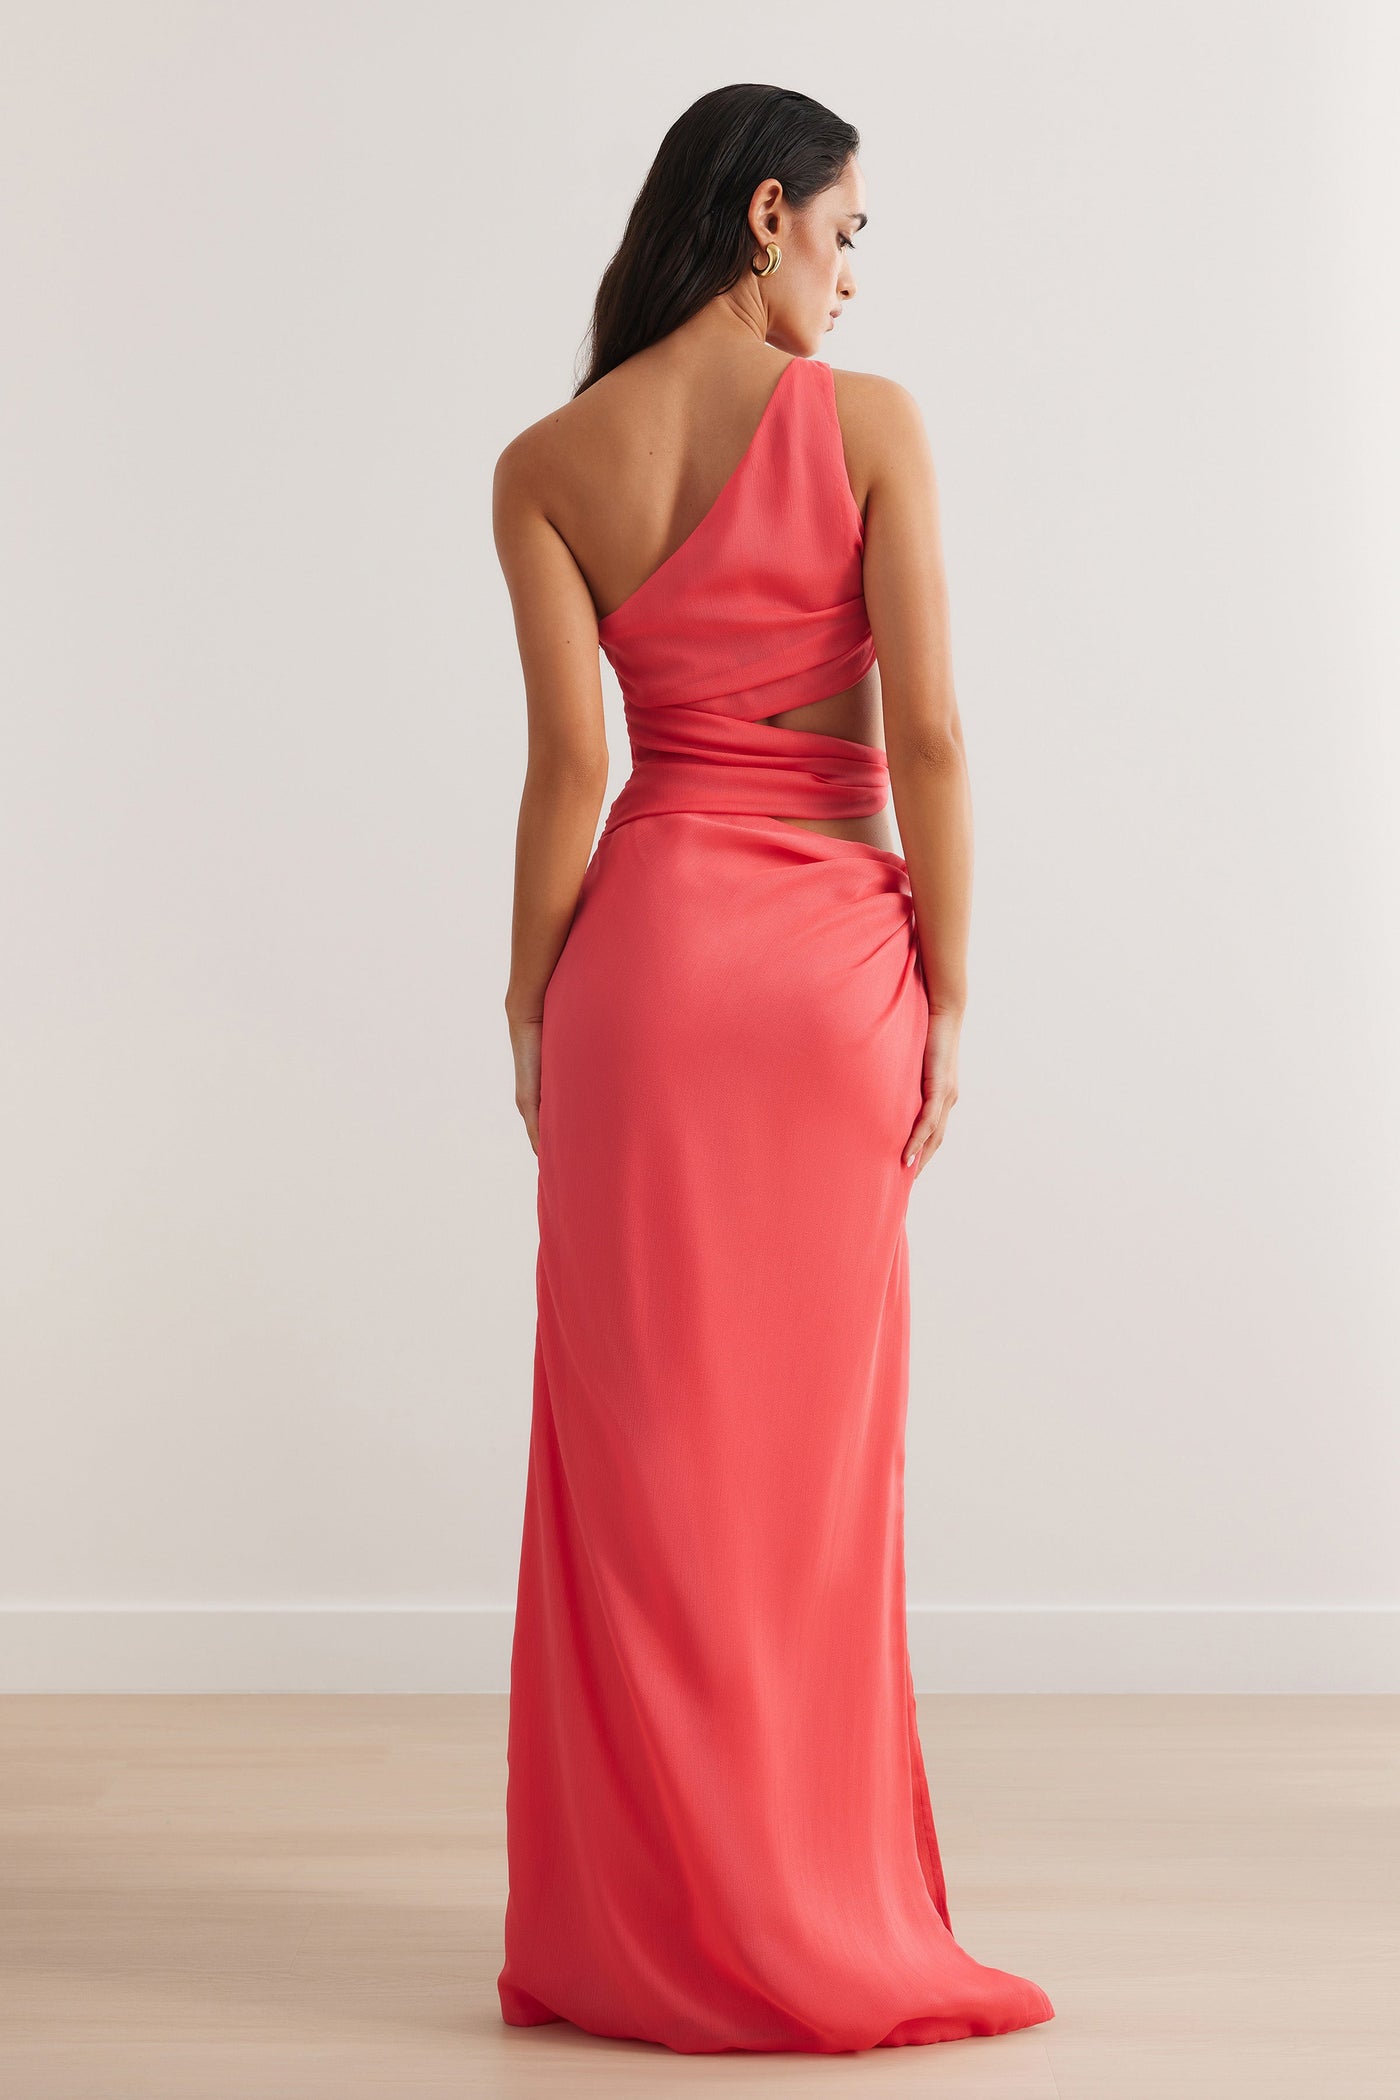 Aurea Dress - Flamingo - SHOPJAUS - JAUS